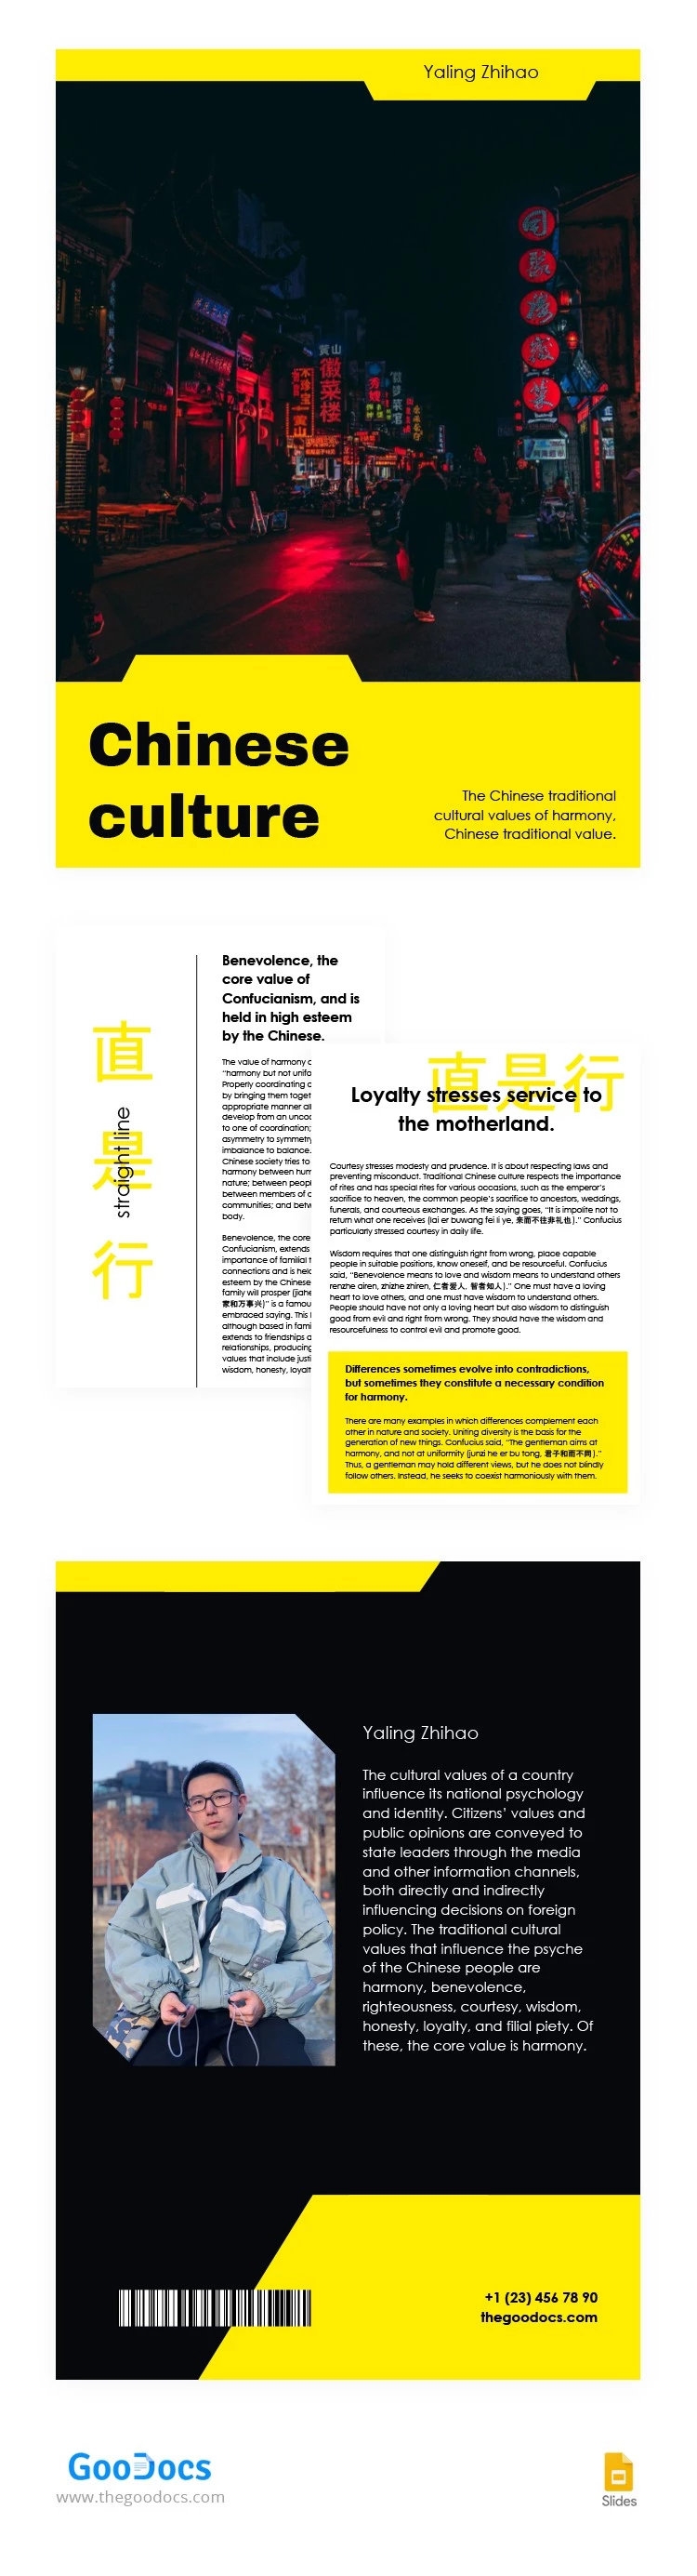 Libro sobre la Cultura China - free Google Docs Template - 10063612